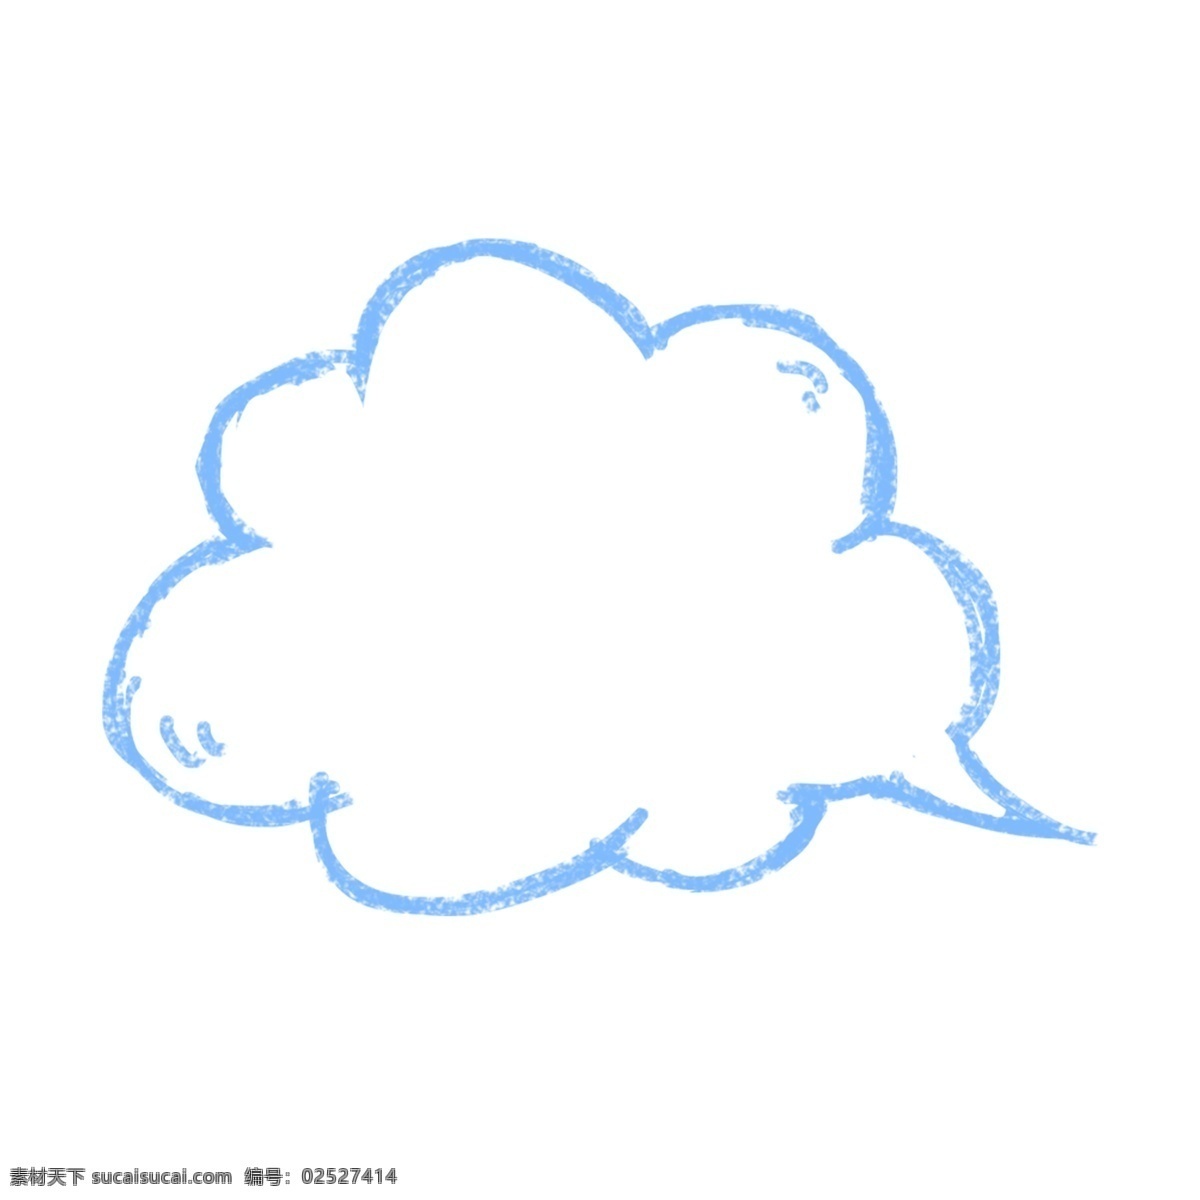 手绘 云朵 卡通 对话框 蓝色手绘 粉笔质感 气泡对话框 可爱对话框 手绘对话框 边框 气泡边框 对话